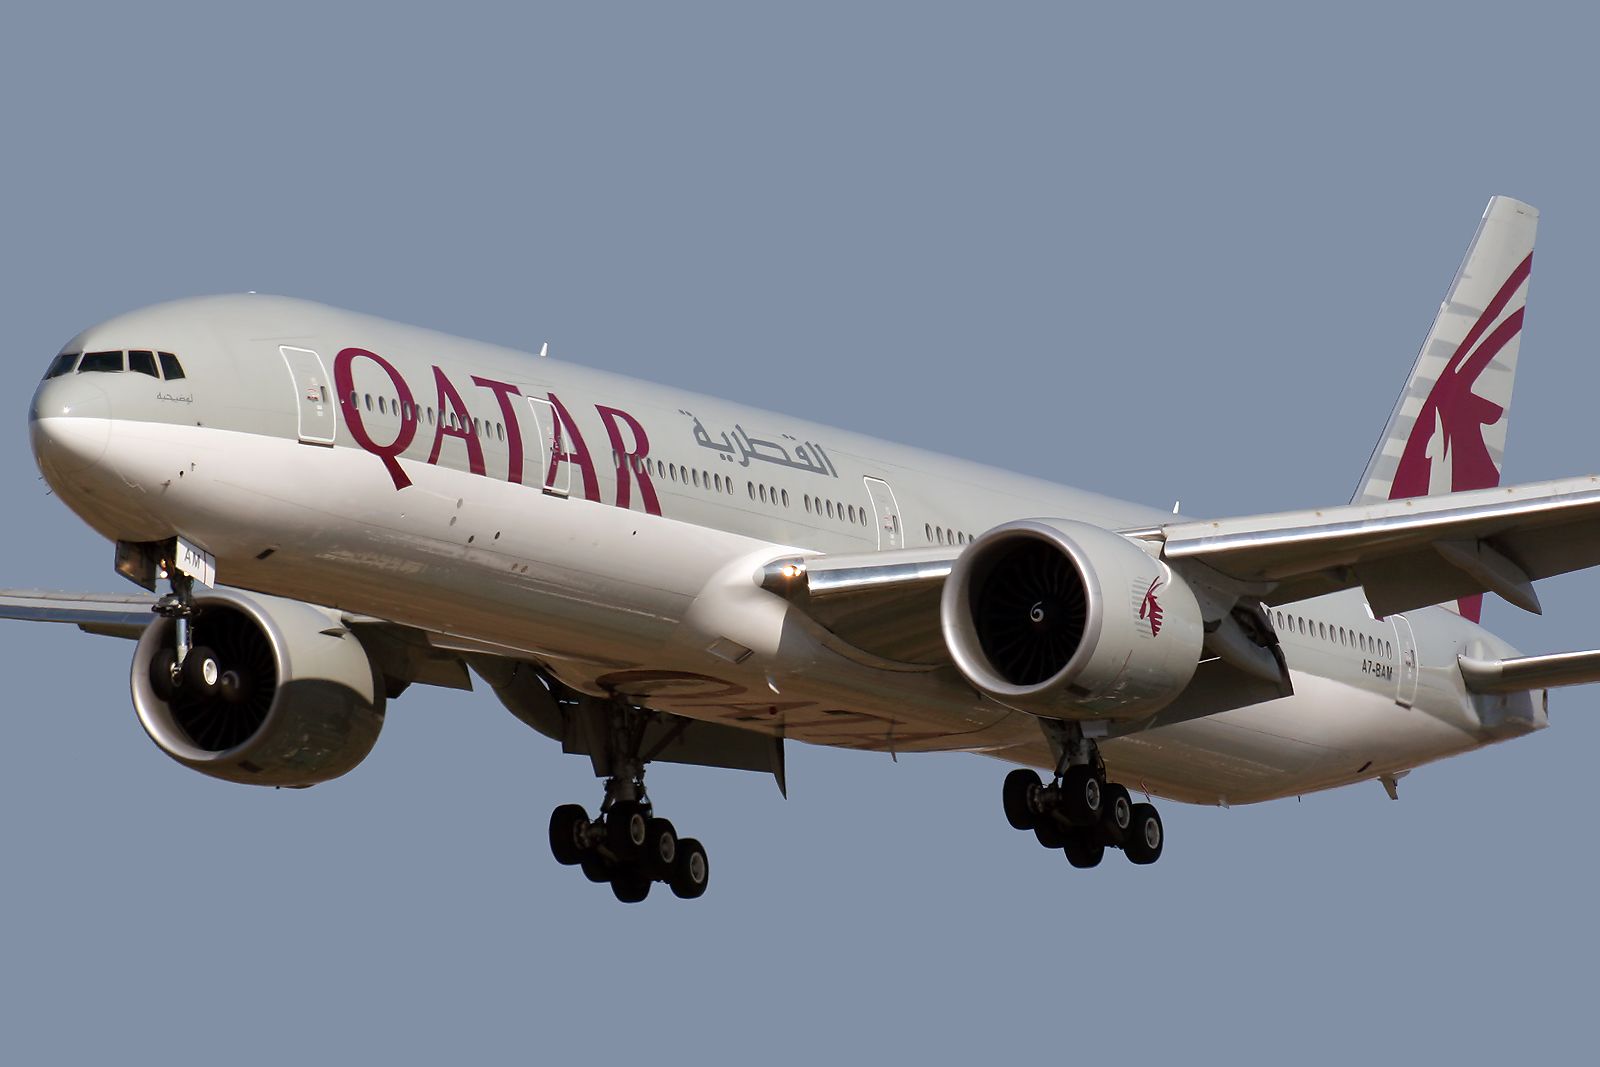 Qatar Airways B777-300ER landing